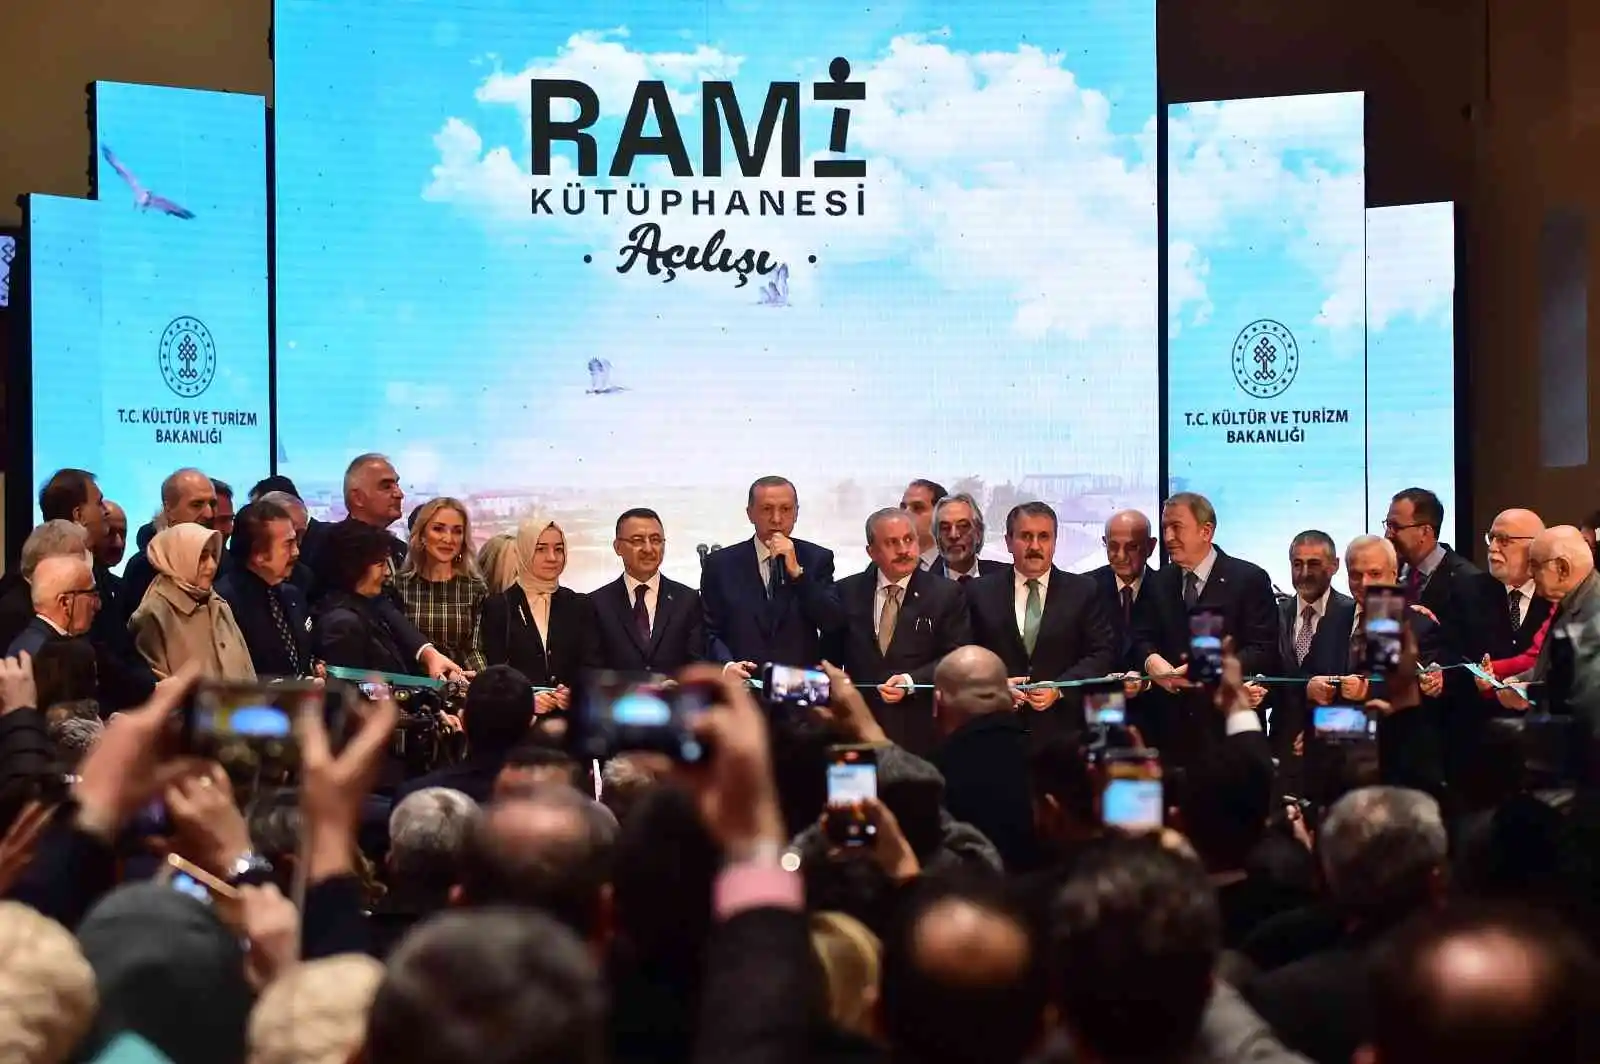 Cumhurbaşkanı Erdoğan: “Rami’yi sadece kütüphane değil pek çok faaliyetin yapılabileceği bir kültür merkezi olarak planladık”
